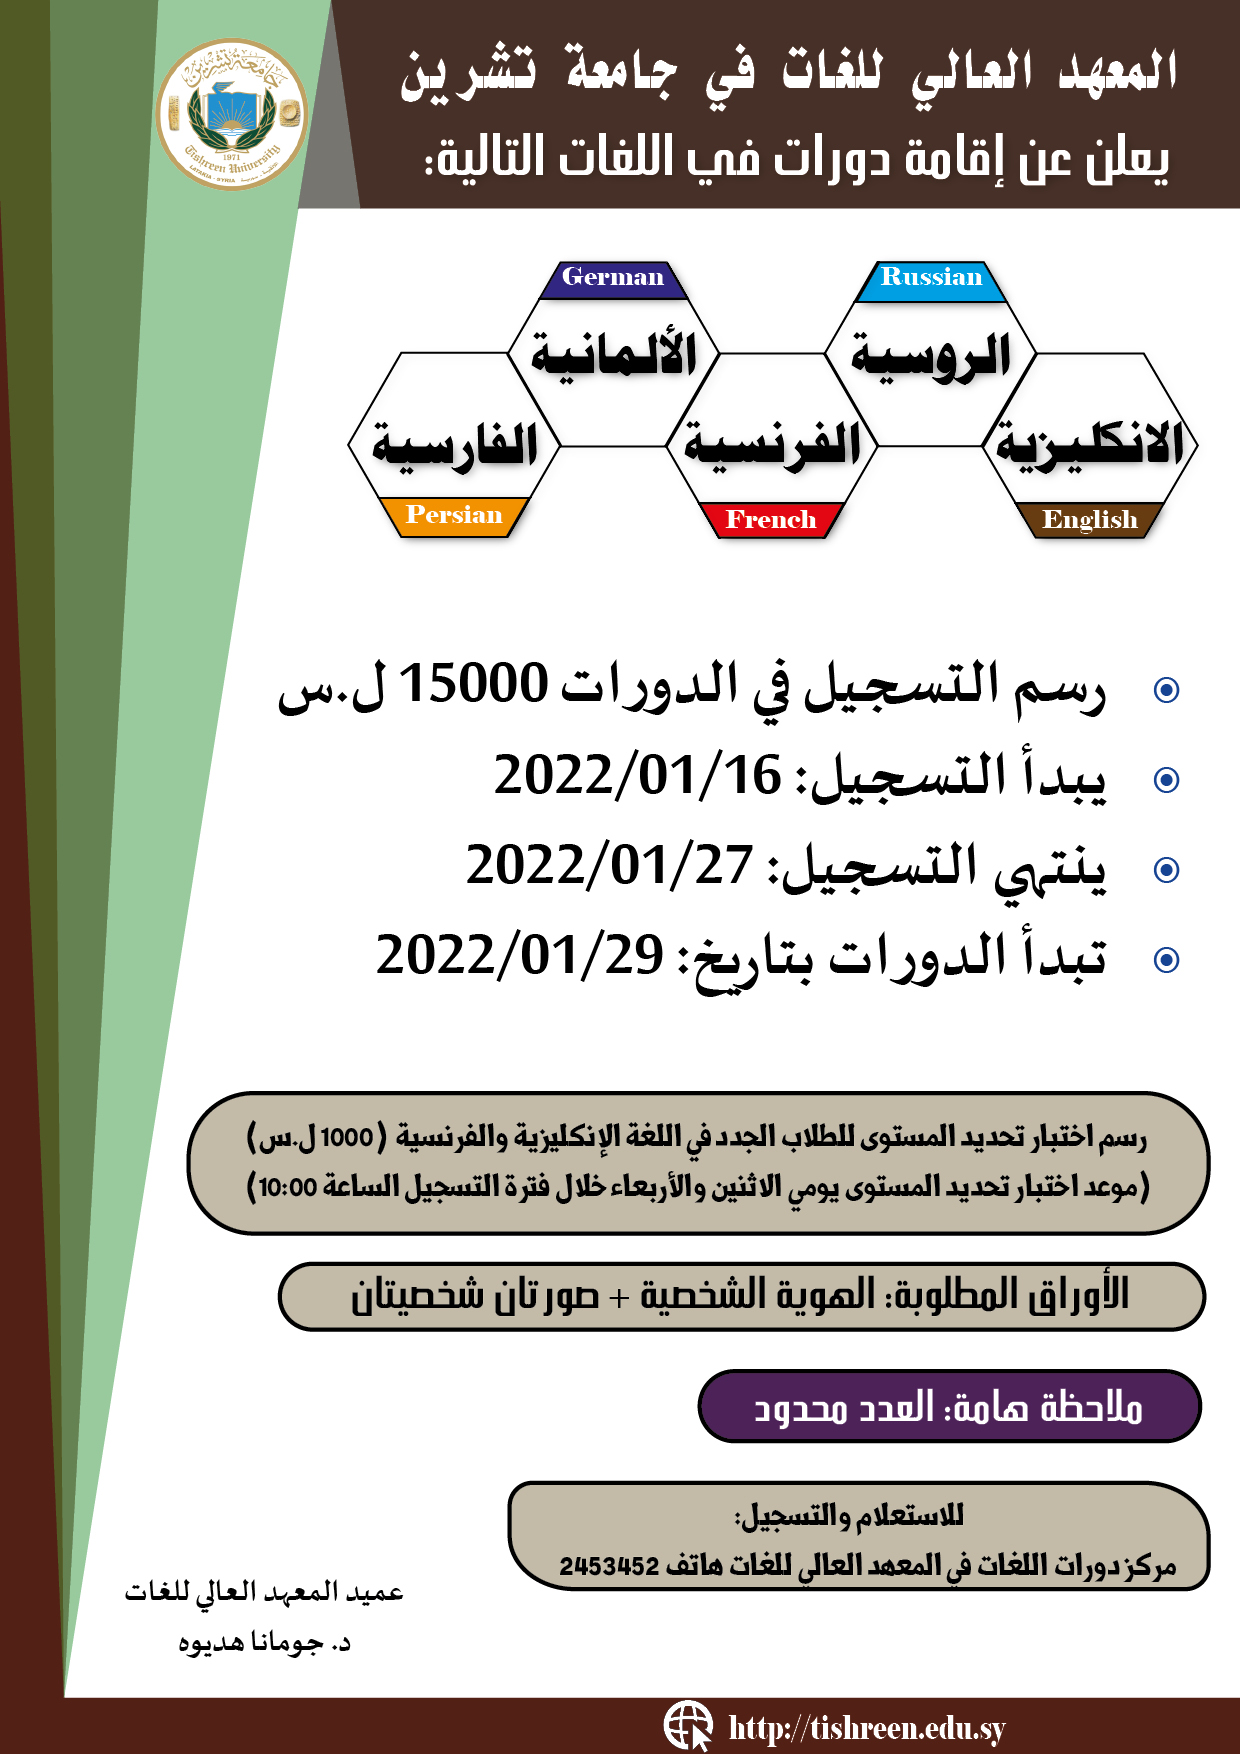 المعهد العالي للغات يعلن عن موعد التسجيل لدورات اللغات التي تبدأ بتاريخ 29-01-2022